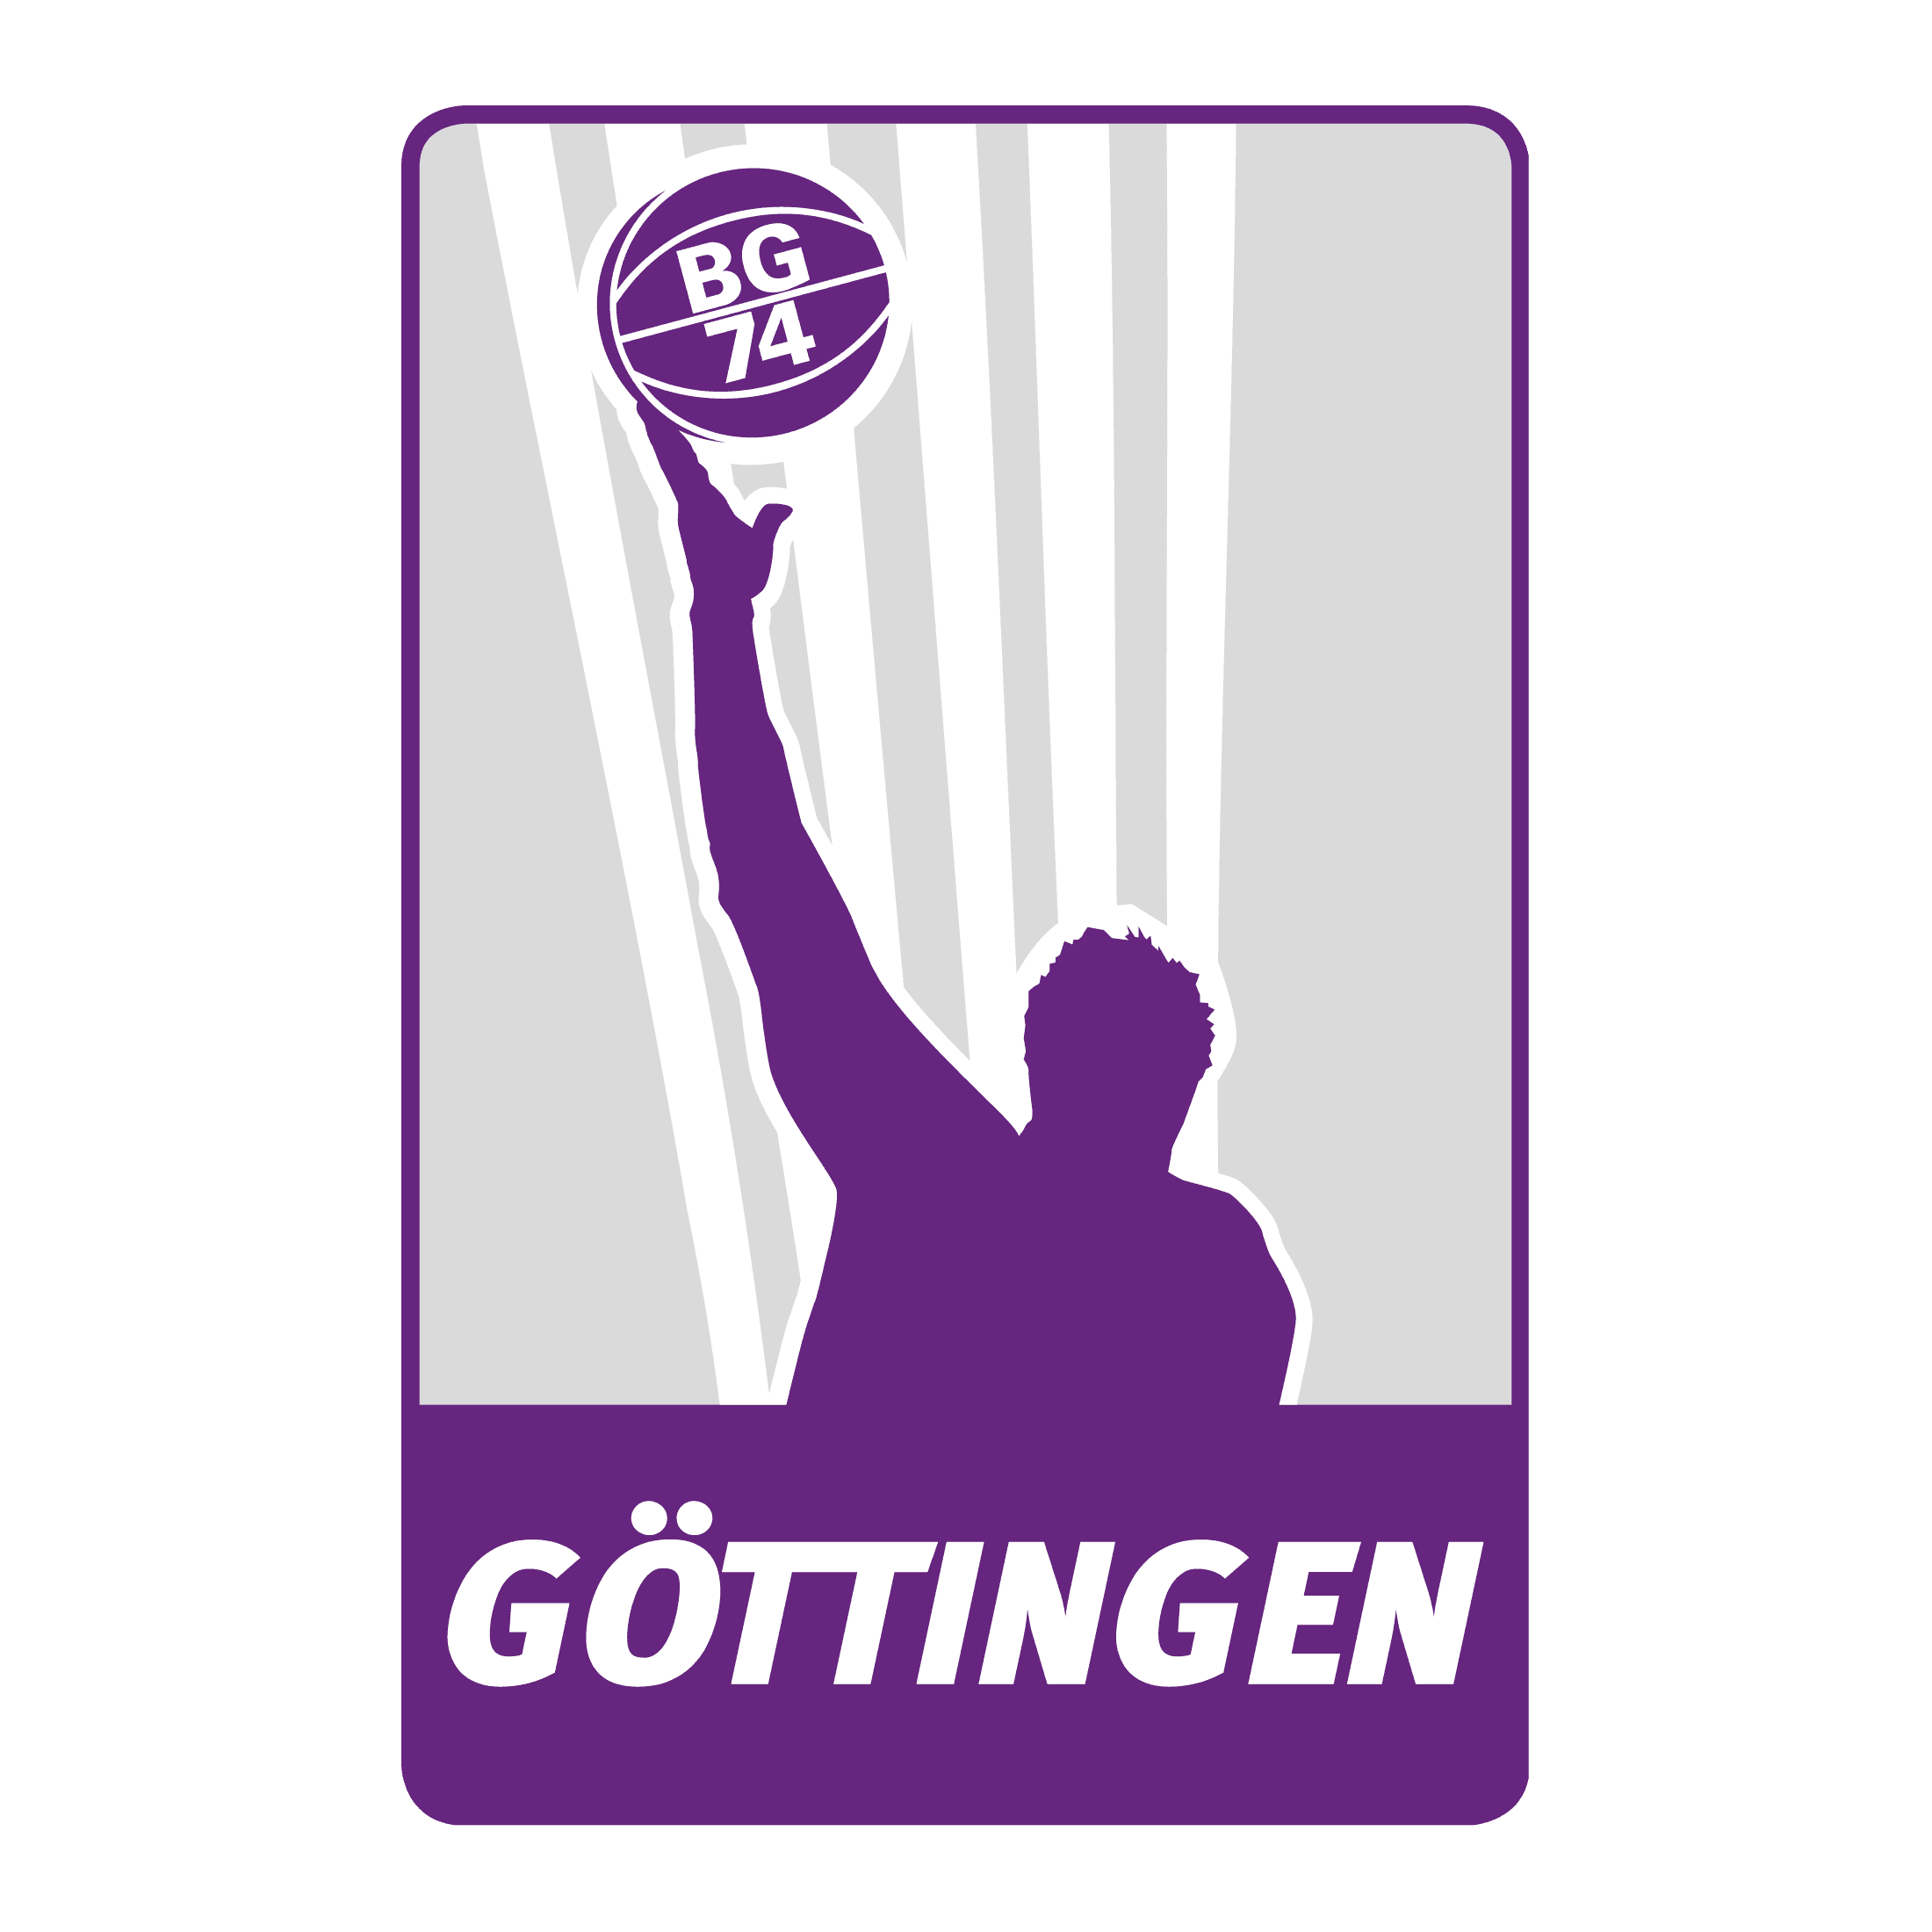 BG 74 Göttingen logo